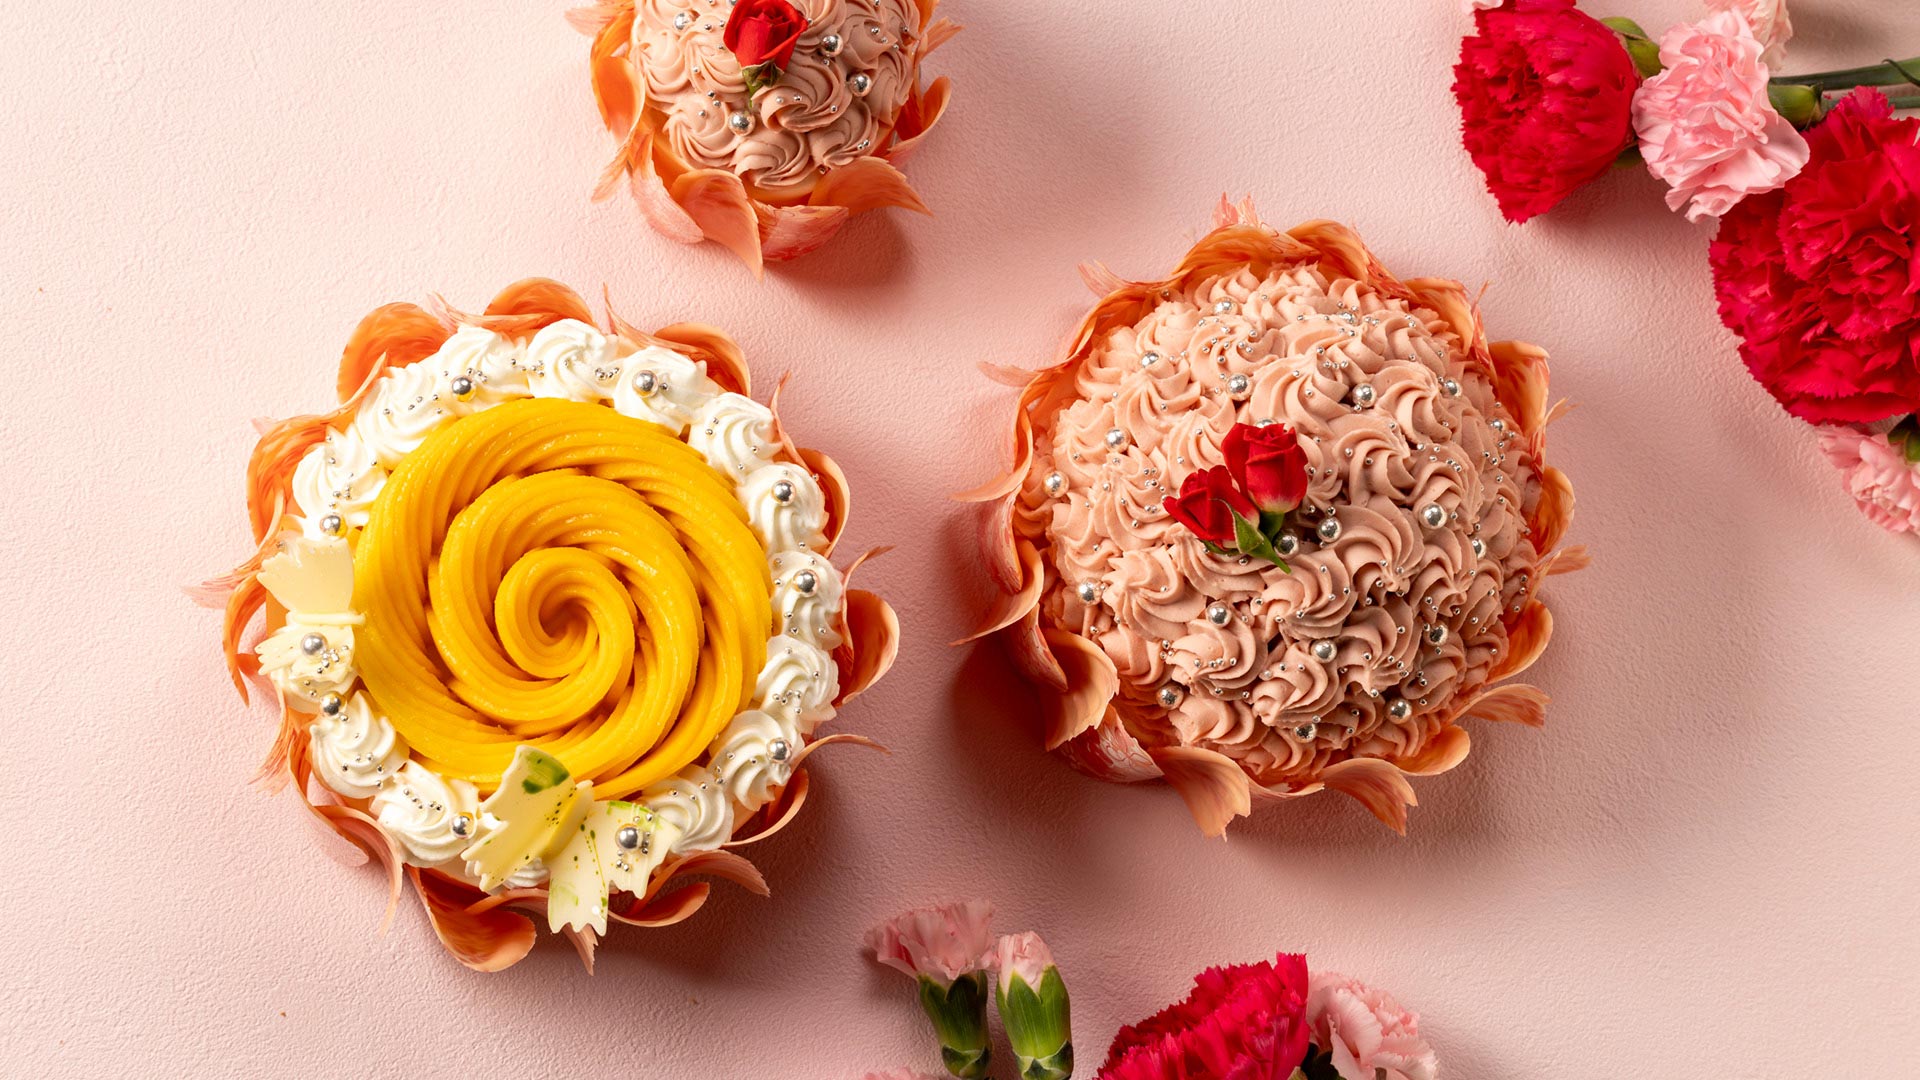 Elegant Flower Cakes for Celebrating Mother’s Day